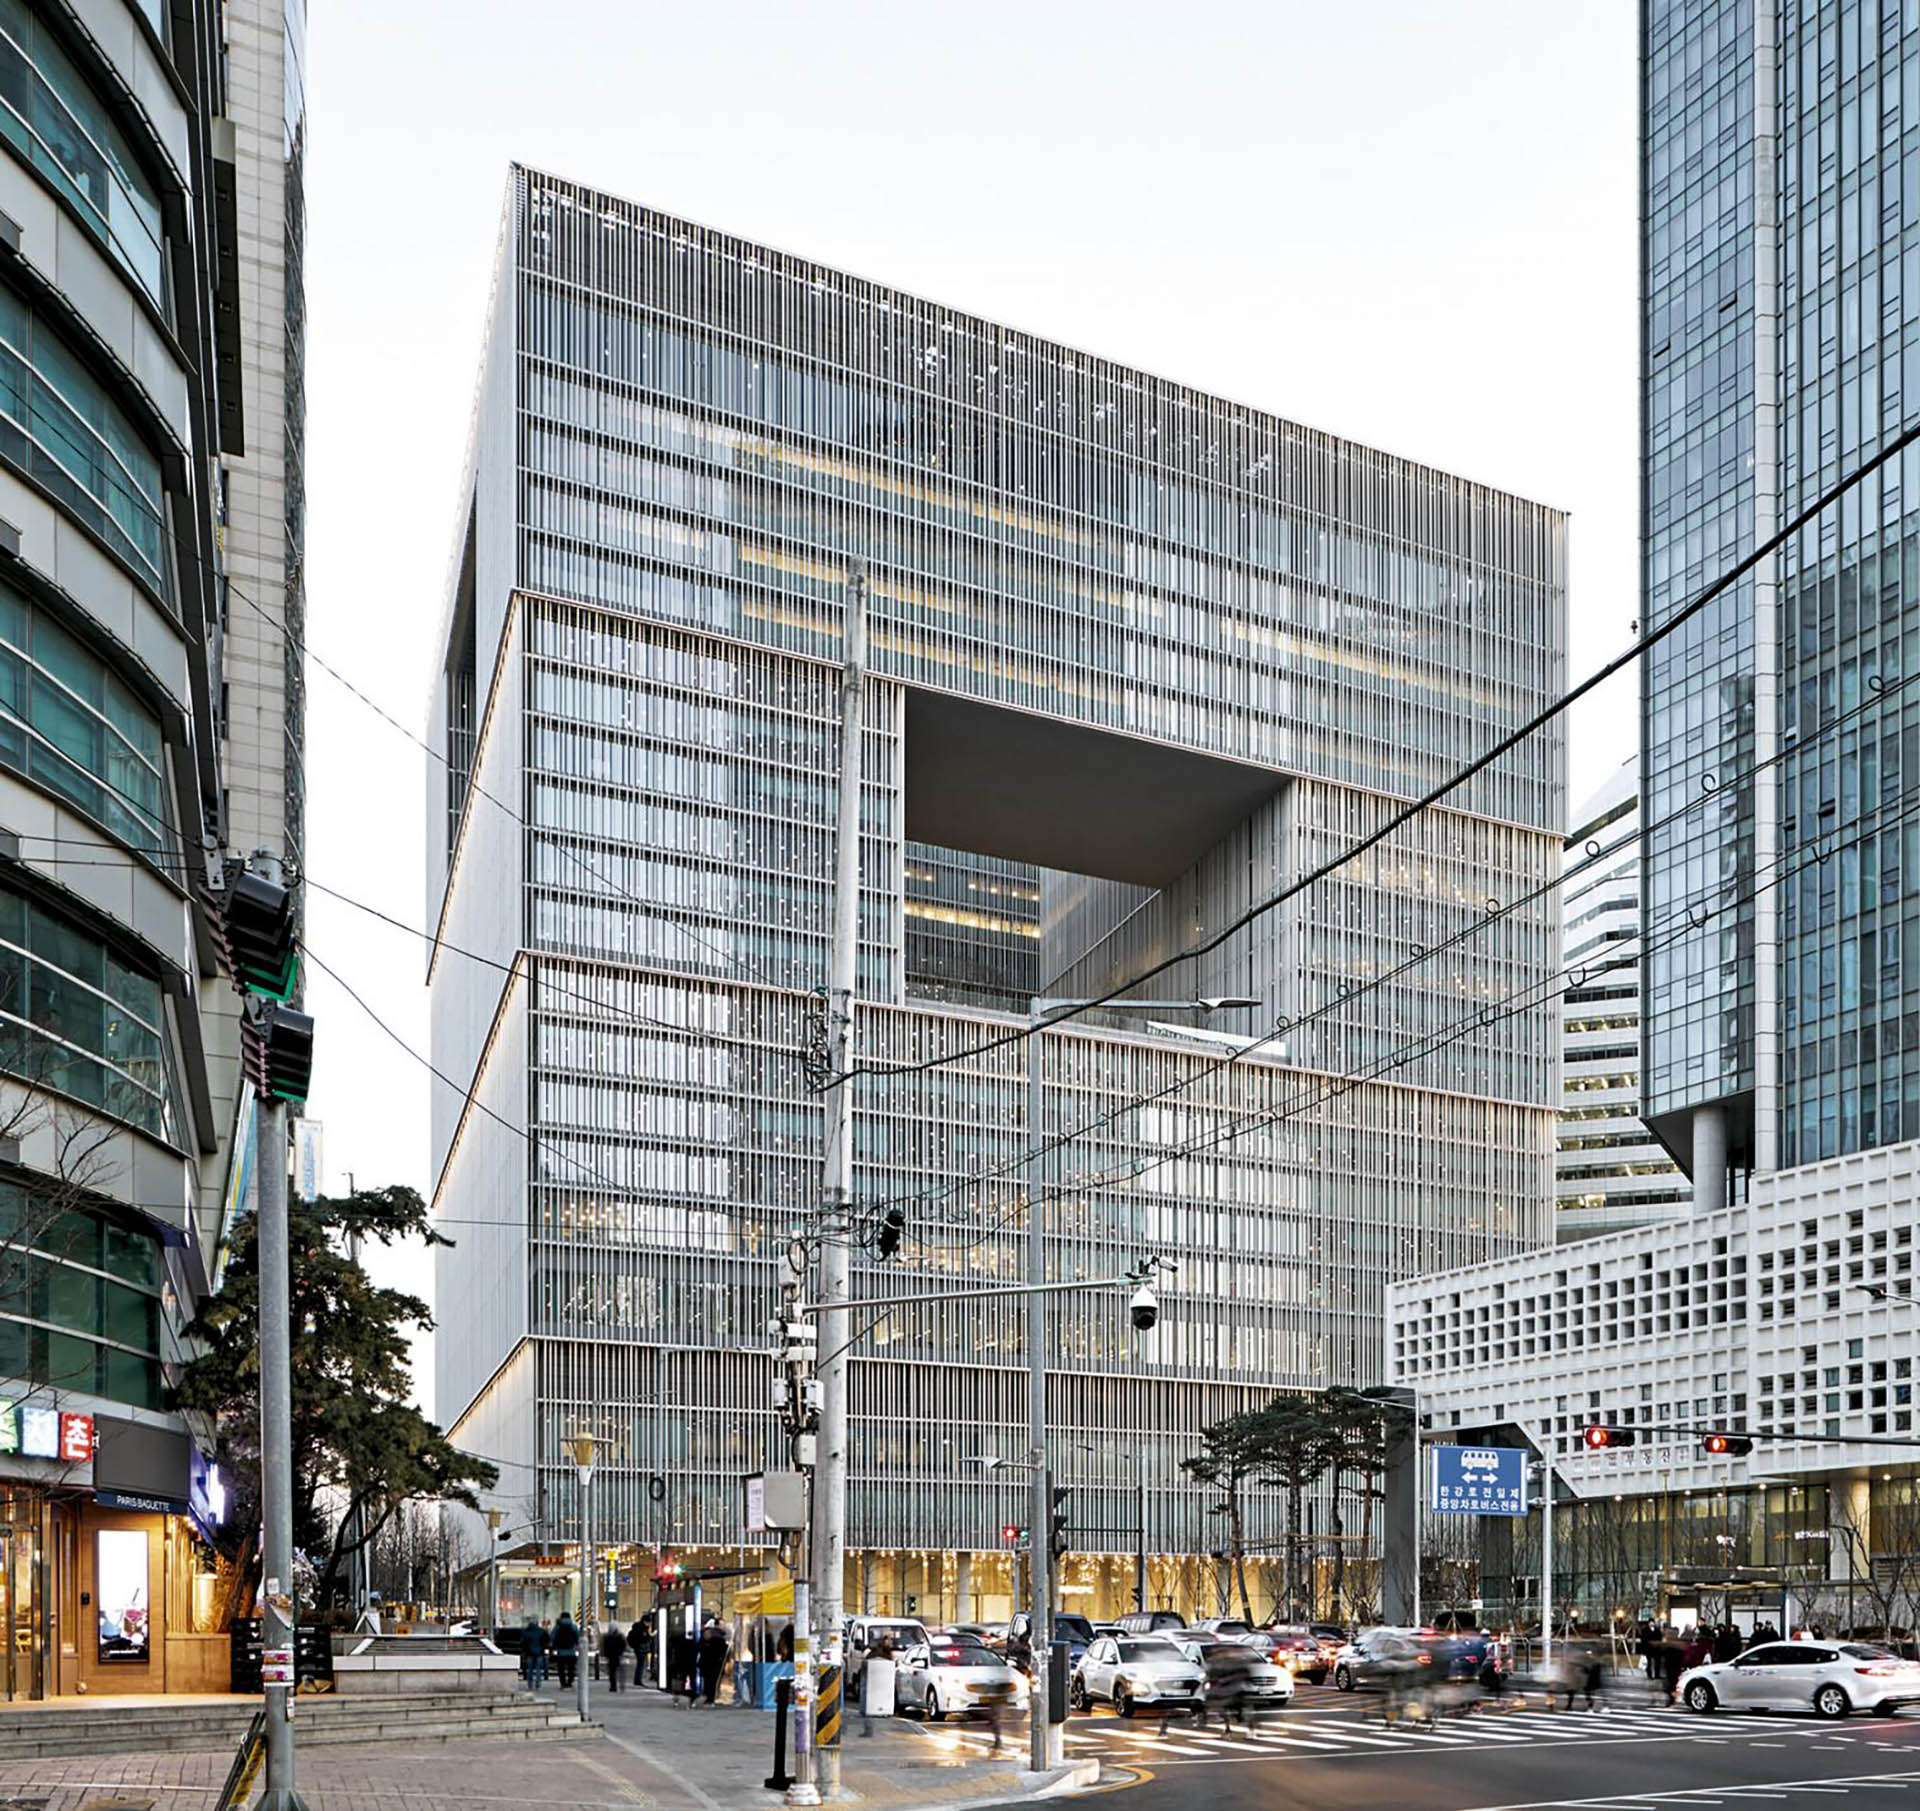 Edificio de oficinas Amorepacific, en Seúl, Corea del Sur